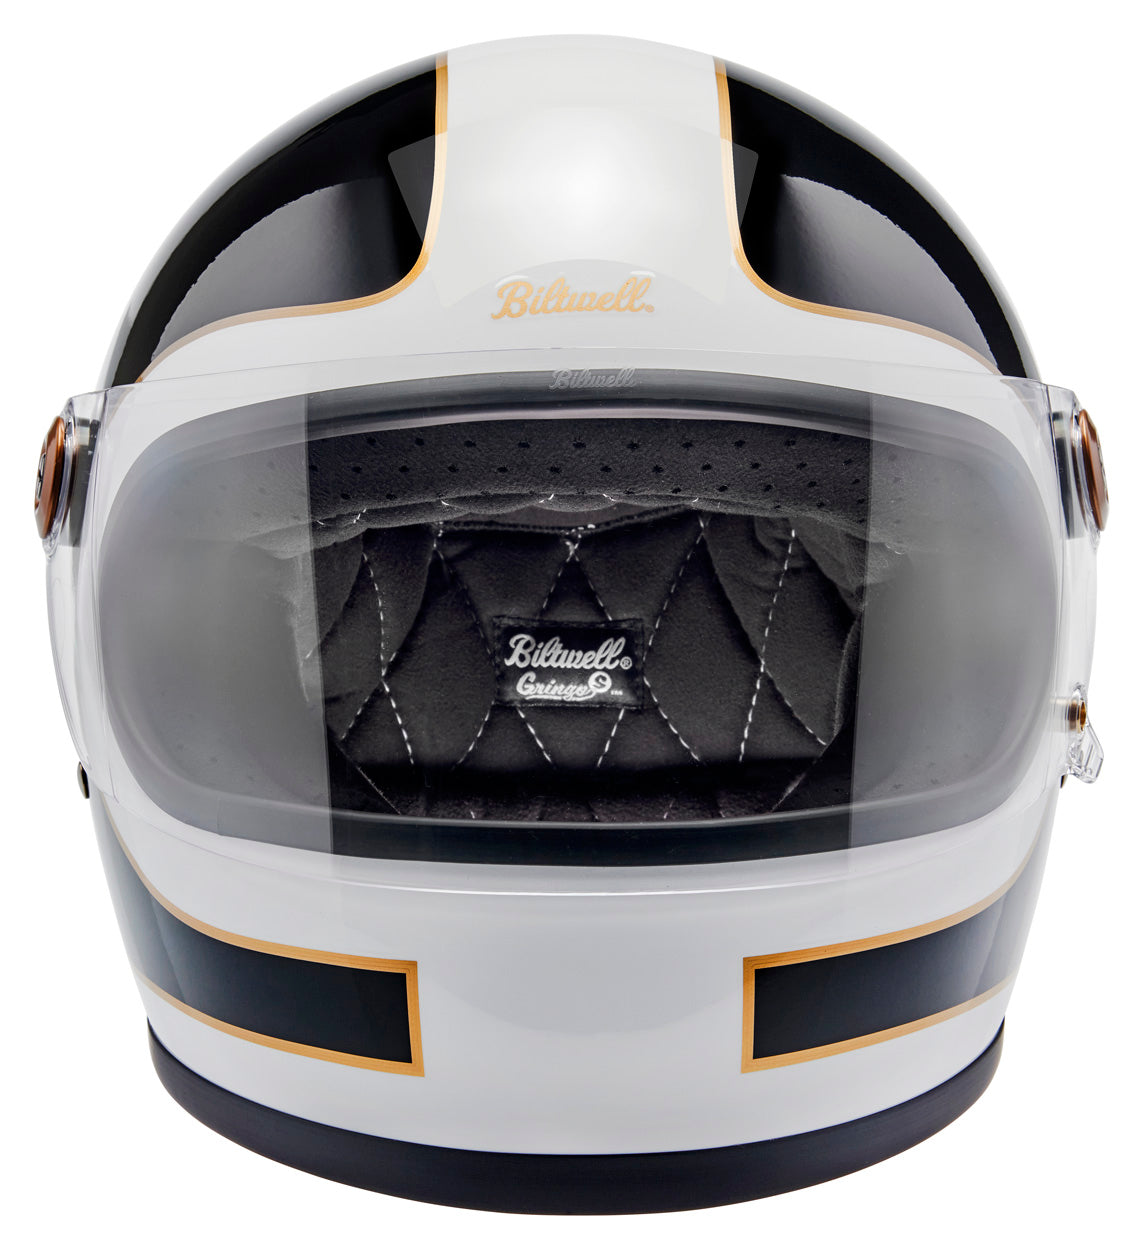 Gringo S ECE R22.06 Helmet - Gloss White / Gloss Black Tracker